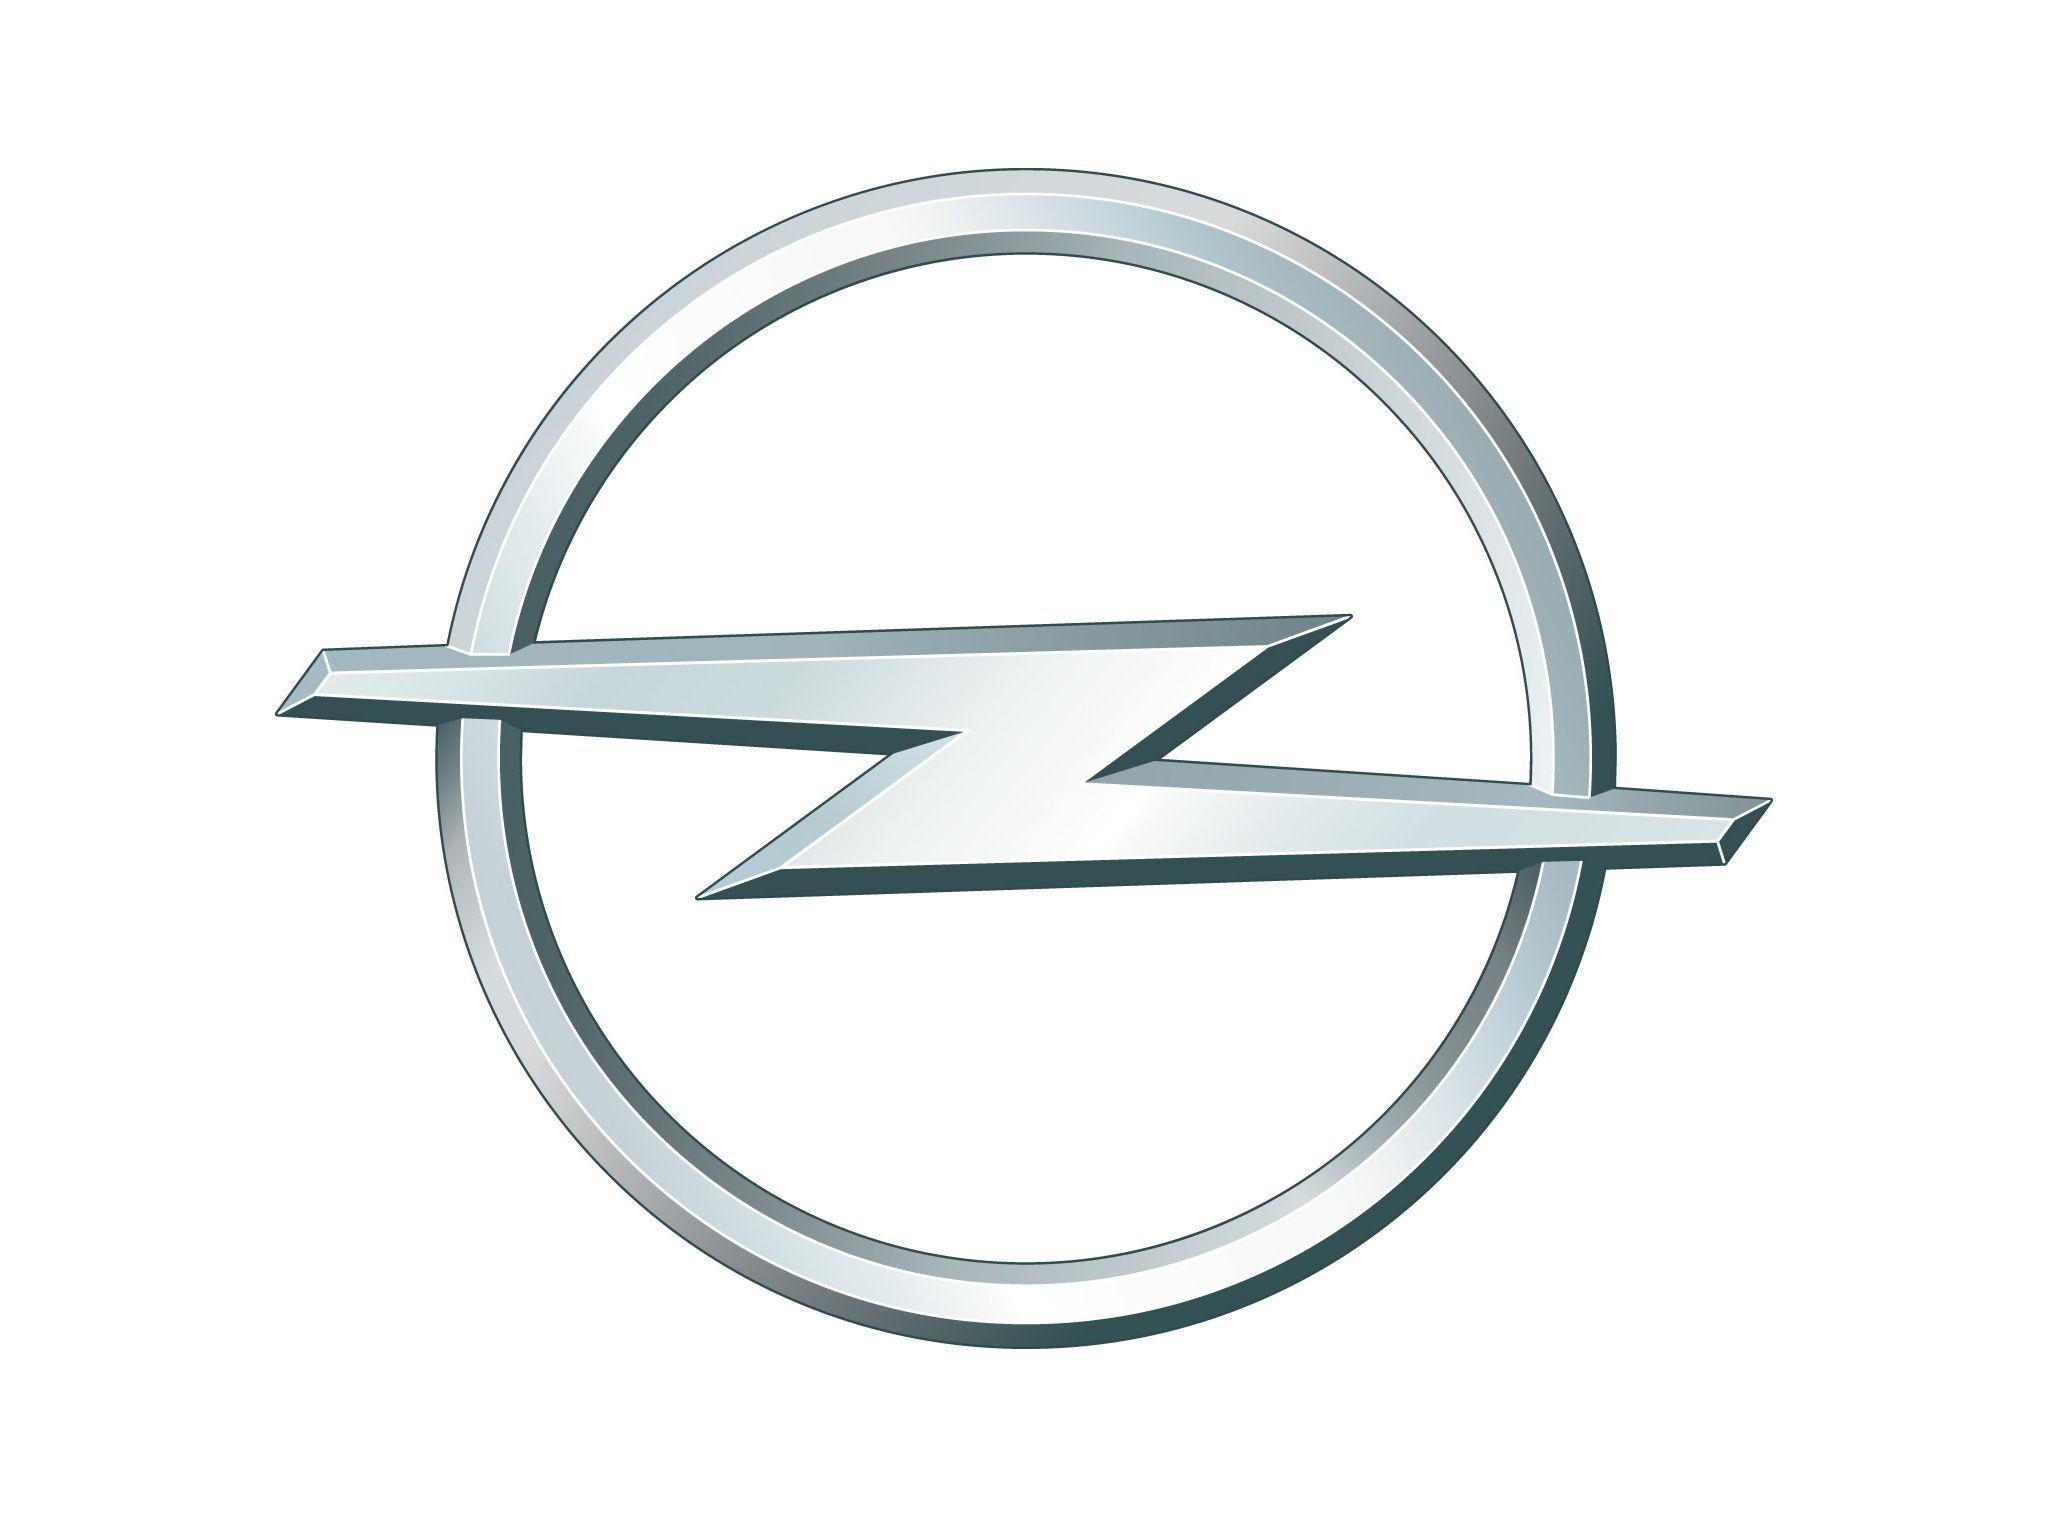 Horizontal Lightning Bolt Car Logo - Opel Logo, Opel Car Symbol and History | Car Brand Names.com